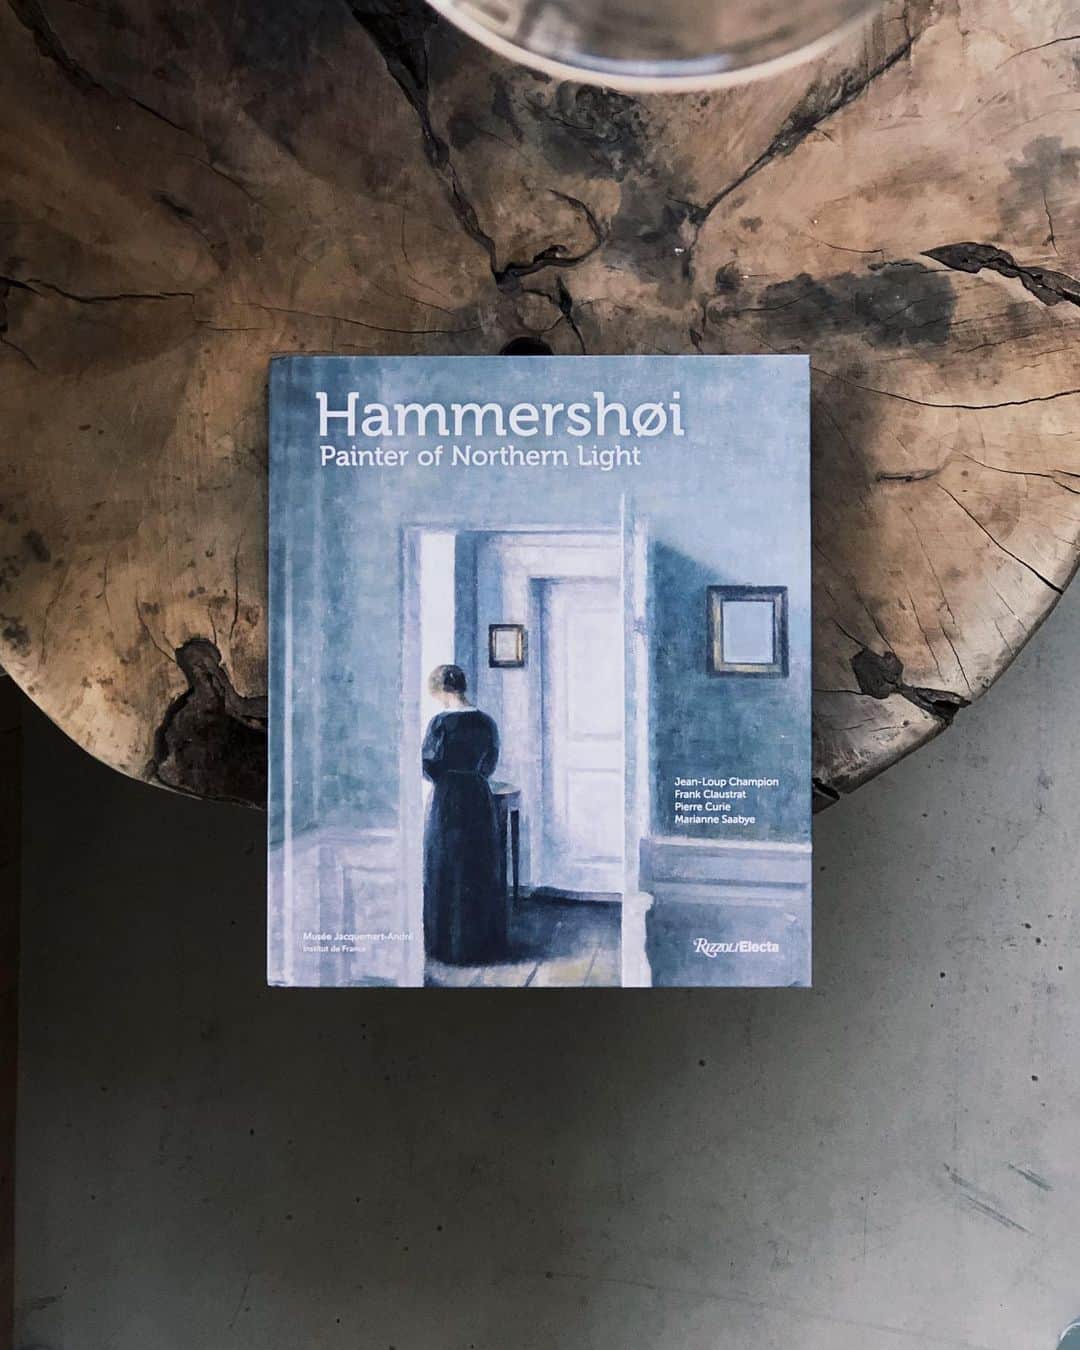 nostos booksのインスタグラム：「本日はハンマースホイやラウシェンバーグ、ワイエスの画集、スパイク・リー『Do the Right Thing』、クラウス・メルケルの石の写真集など42冊を入荷しました。  オンラインストアへは商品タグをタップ◯ 　 入荷本からおすすめ10選  ----------  1冊目 『Hammershoi: Painter of Northern Light』 デンマークを代表する画家、ヴィルヘルム・ハンマースホイの作品集。物憂げで静寂な作品で知られるハンマースホイは、北欧の光と孤独を象徴する画家として知られている。近年評価が高まりつつある彼の代表作を紹介するもので、その多くはめったに見られないプライベートコレクションからのものとなっている。  ----------  2冊目 『Robert Rauschenberg』 絵画、彫刻、版画、写真、パフォーマンスなど、驚くほど多様な媒体で作品を制作し戦後のアメリカ文化に最も大きな変化をもたらした人物の一人、ロバート・ラウシェンバーグの作品集。MoMAで開催された大規模な回顧展にあわせて出版されたもの。60年以上にわたるキャリアを包括して紹介する。  ----------  3冊目 『Klaus Merkel: Album of Stones』 ドイツ出身の写真家でアーティストのクラウス・メルケルの作品集。奇岩のある自然の風景、寺院や遺跡、教会などの建築に目を向け、重なり合うパターンや構成、大きなズレや類似、並列することで共鳴する構造物を探し出し、印象的なモノクロ写真で記録している。   ----------  4冊目 『岡本太郎 爆発大全』 岡本太郎生誕100年記念作品集。絵画、彫刻、写真、ドローイングなど、代表的な作品を時系列順に約200点収録。作品を全面に大きく掲載した、ダイナミックな装丁は祖父江慎（コズフィッシュ）によるもの。  ----------  5冊目 『Spike Lee: Do the Right Thing』 1989年にスパイク・リーが制作した映画「ドゥ・ザ・ライト・シング」のスチール写真集。映画のシーンや撮影中のオフショット、脚本などをカラーで収録。  ----------  6冊目 『ロック・エンド』 「ロック・マガジン」編集長／音楽評論家、阿木譲によるショートエッセイや金坂健二、渋谷陽一、今野雄二、細野晴臣、松岡正剛との対談を収録。それぞれが、ロック、パンク、テクノなどの近代音楽について語る、80年代のプラスティックな質感をそのまま綴じ込めた1冊。巻末には音楽系譜、年表、レコード一覧を掲載。装丁は戸田ツトムと松田行正。写真は鋤田正義、永田陽一。編集は米沢敬、宮野尾充晴他。  ----------  7冊目 『ワイエス画集3 ヘルガ』 20世紀アメリカを代表する画家、アンドリュー・ワイエスの画集。1987年から1988年にかけて各地で開催された展示会に際して刊行されたもの。ヘルガシリーズにおけるデッサン、ドローイング、ペインティング作品を多数収録。   ----------  8冊目 『「色彩」としてのスフィンクス』 版画家・加納光於の展覧会、「『色彩』としてのスフィンクス 加納光於」に併せて刊行。1960年～1992年までの図版、カタログ、そして同時代に書かれた評論文を抜粋掲載。  ----------  9冊目 『魅惑のニッポン木版画』 横浜美術館開館25周年を記念して刊行された、幕末から現代までの木版画作品集。古くは歌川広重や竹久夢二から、現在活躍する版画家のものまで、オールカラーで掲載。  ----------  10冊目 『1920年代日本展 都市と造形のモンタージュ』 1988年に開催された「1920年代・日本展」の図録。大正後期から昭和のはじめ、都市化や国際化によって大きな転機を迎えることとなった日本で生まれた、新しい造形を多角的に紹介。原弘、村山知義らのグラフィックデザイン、木村伊兵衛、中山元太らの写真などをカラーとモノクロで多数収録。  ----------------------  店舗情報はこちら @nostosbooks  ----------------------  オンラインストアは毎日19時更新○  ----------------------  #ヴィルヘルムハマスホイ #nostosbooks #ノストスブックス #祖師ヶ谷大蔵 #砧」